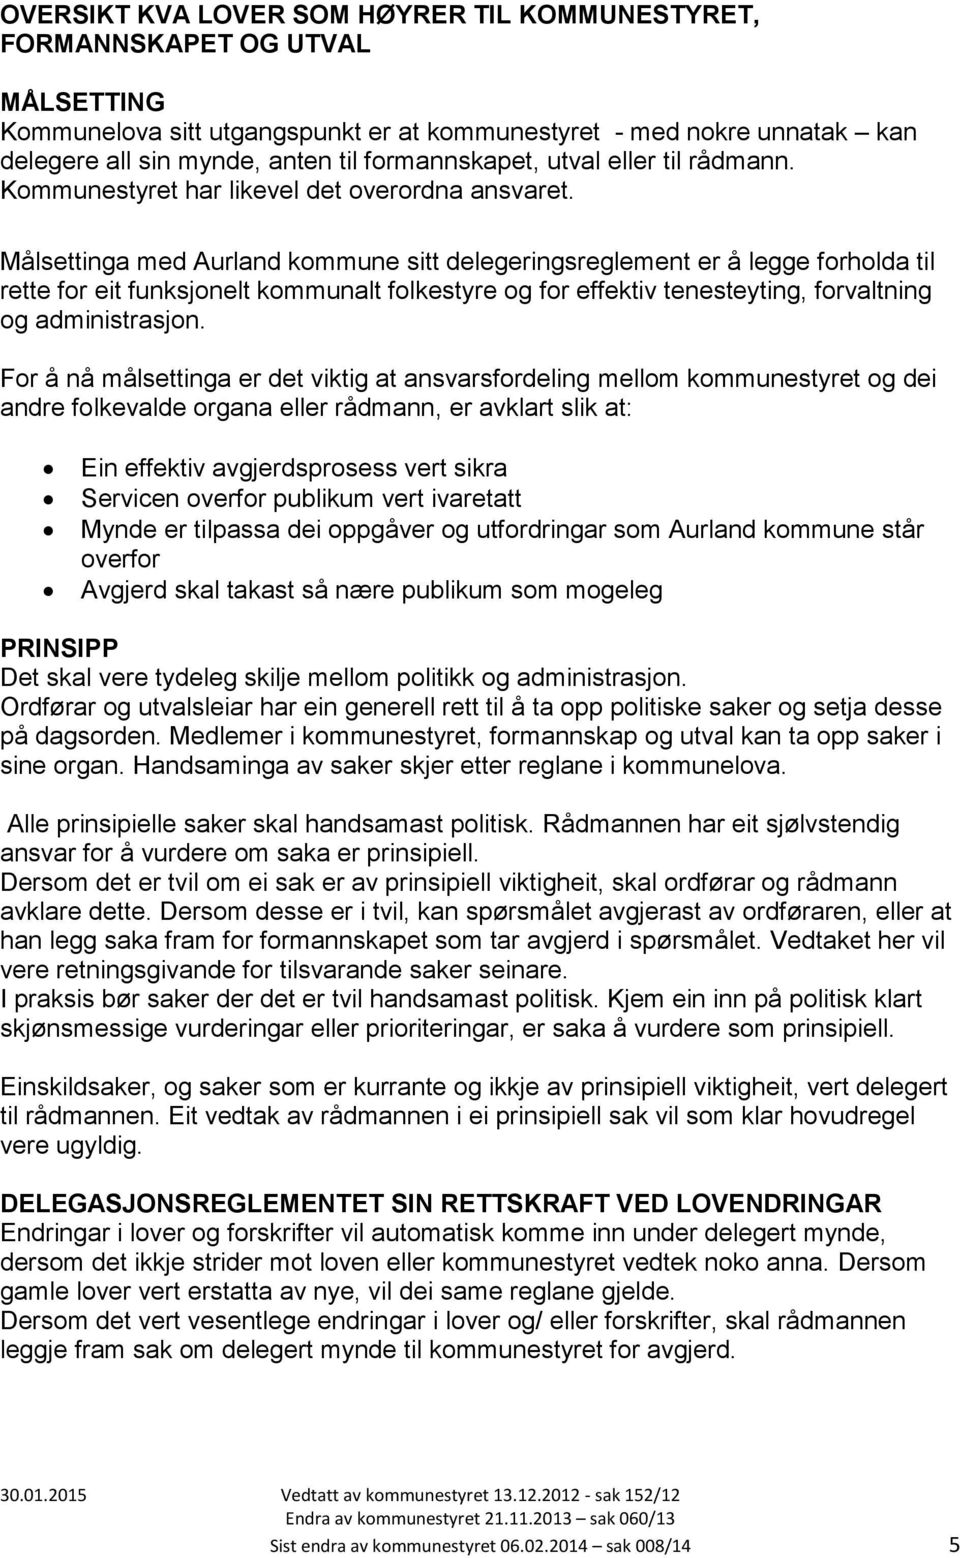 Målsettinga med Aurland kommune sitt delegeringsreglement er å legge forholda til rette for eit funksjonelt kommunalt folkestyre og for effektiv tenesteyting, forvaltning og administrasjon.